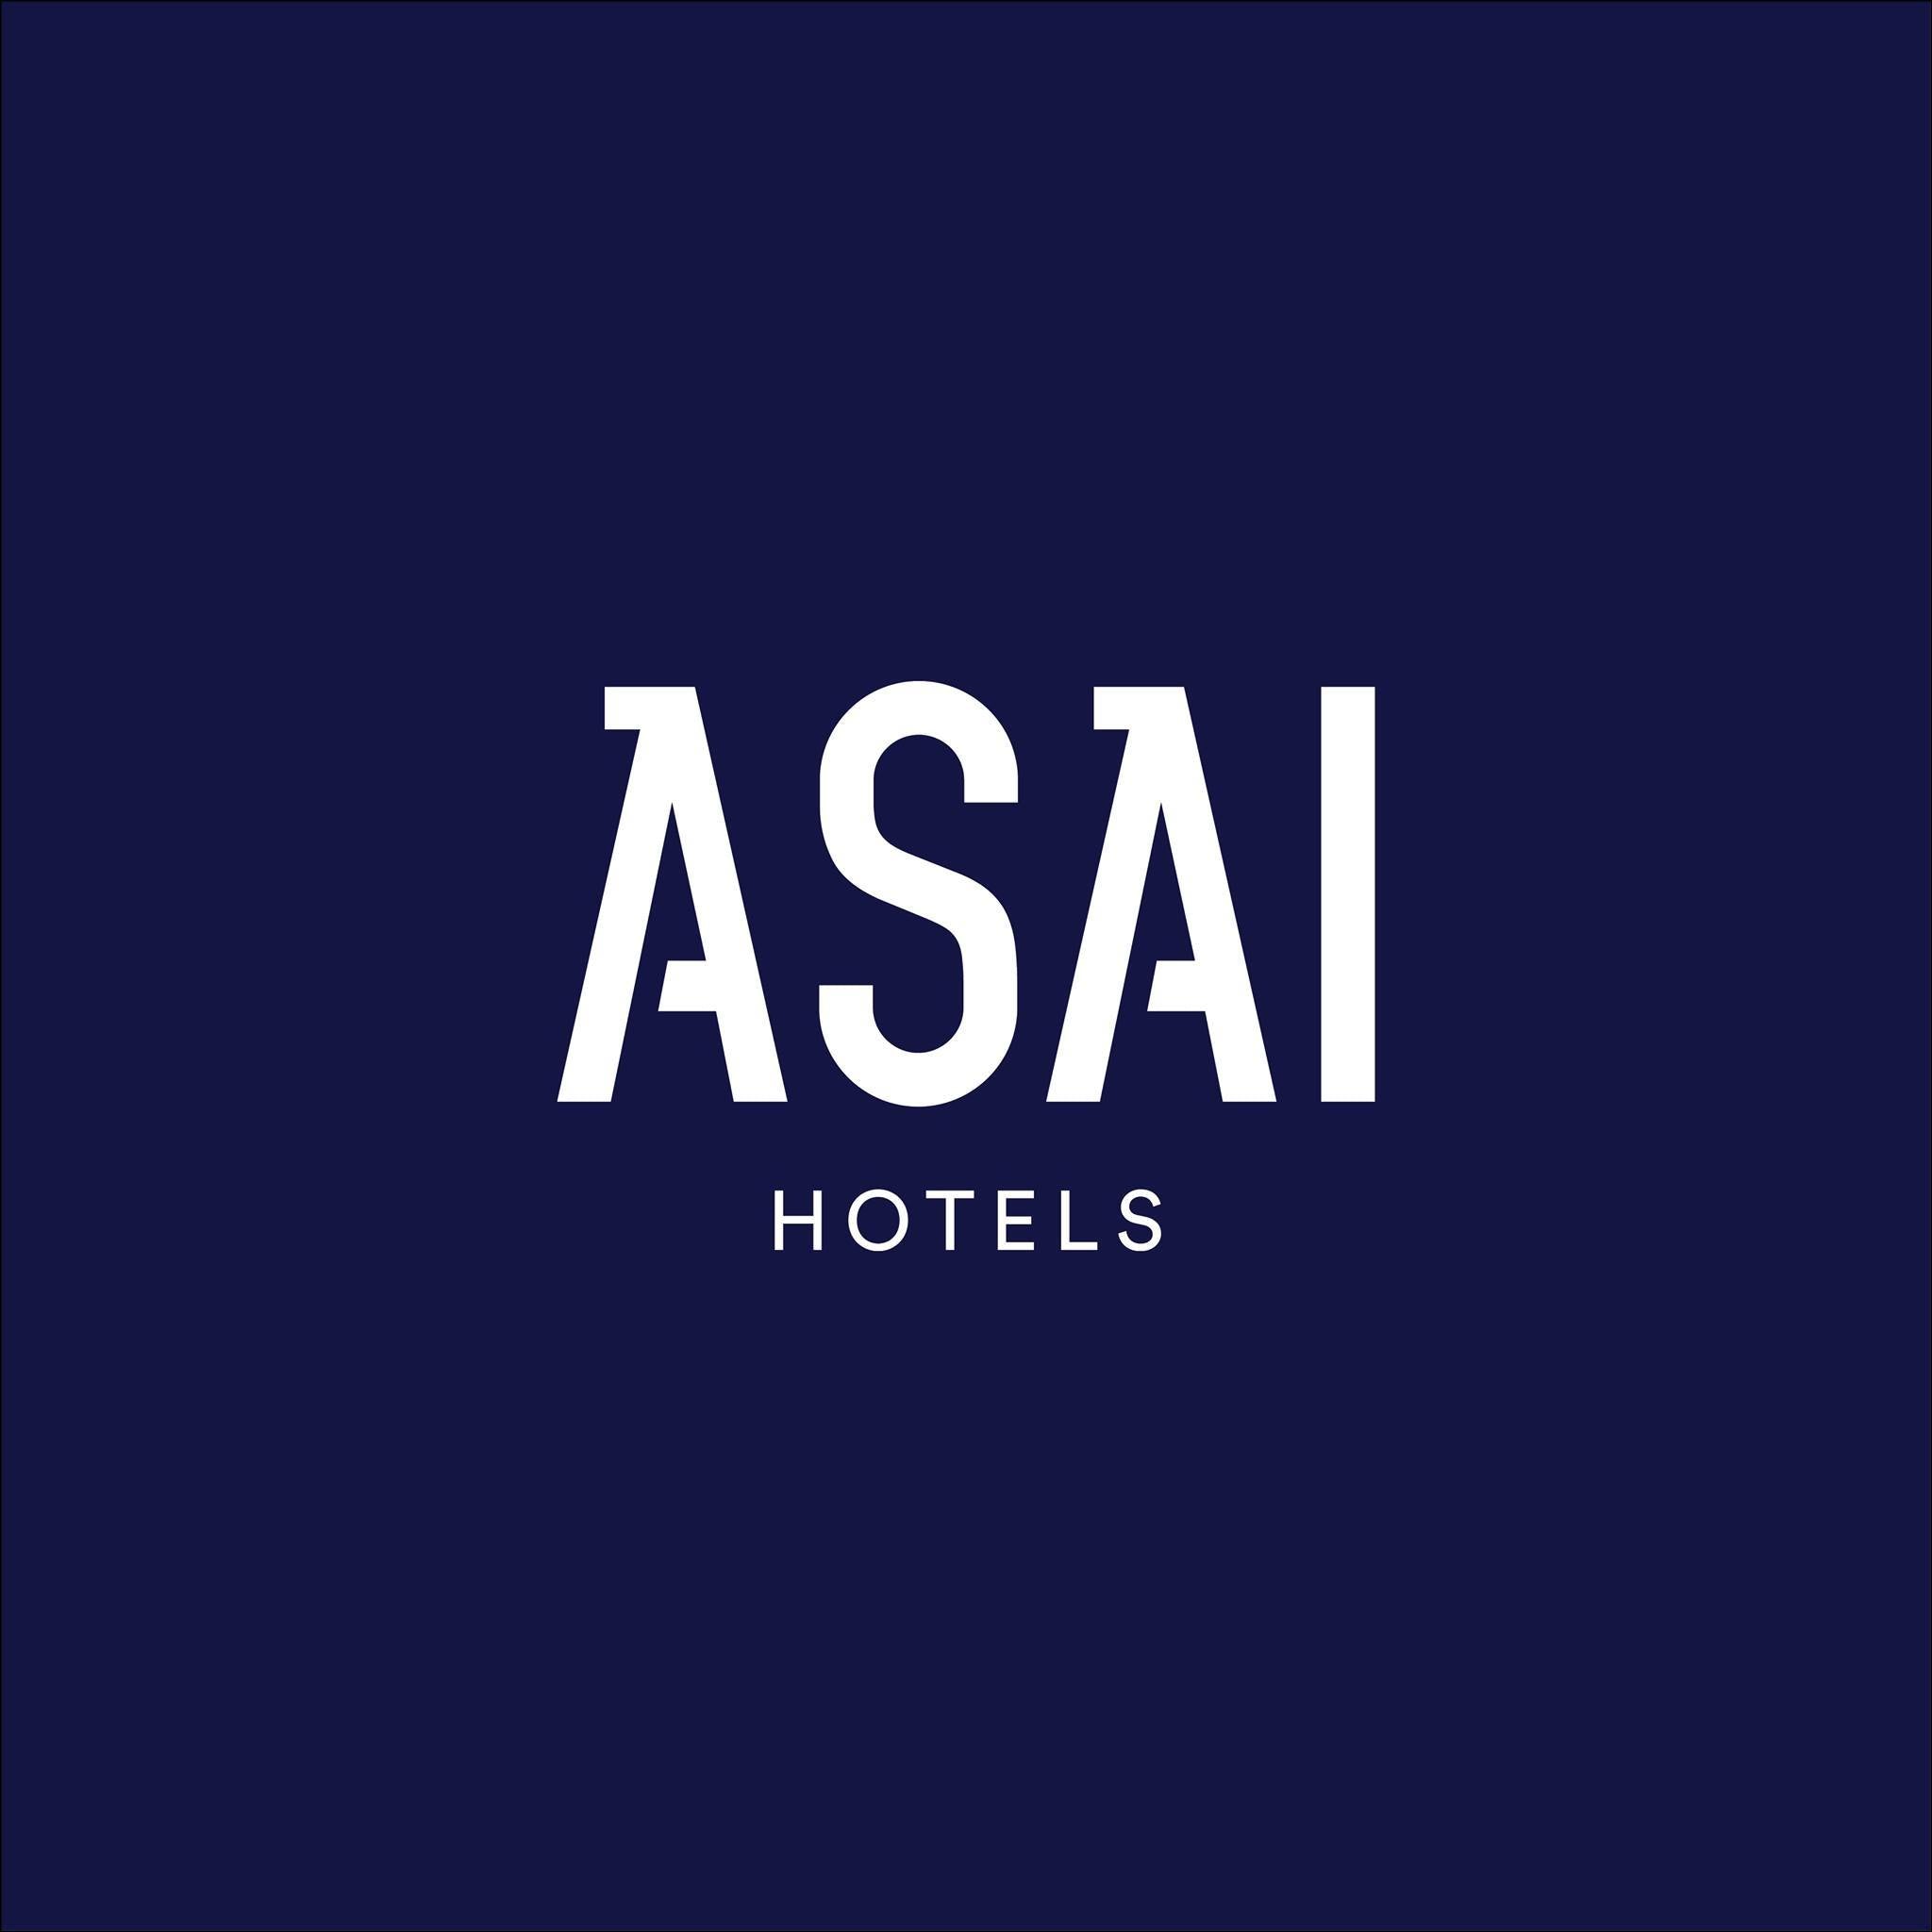 Asai Hotel logo.jpeg__PID:e48f932e-c5b0-496b-b7d9-bbbe7e760051